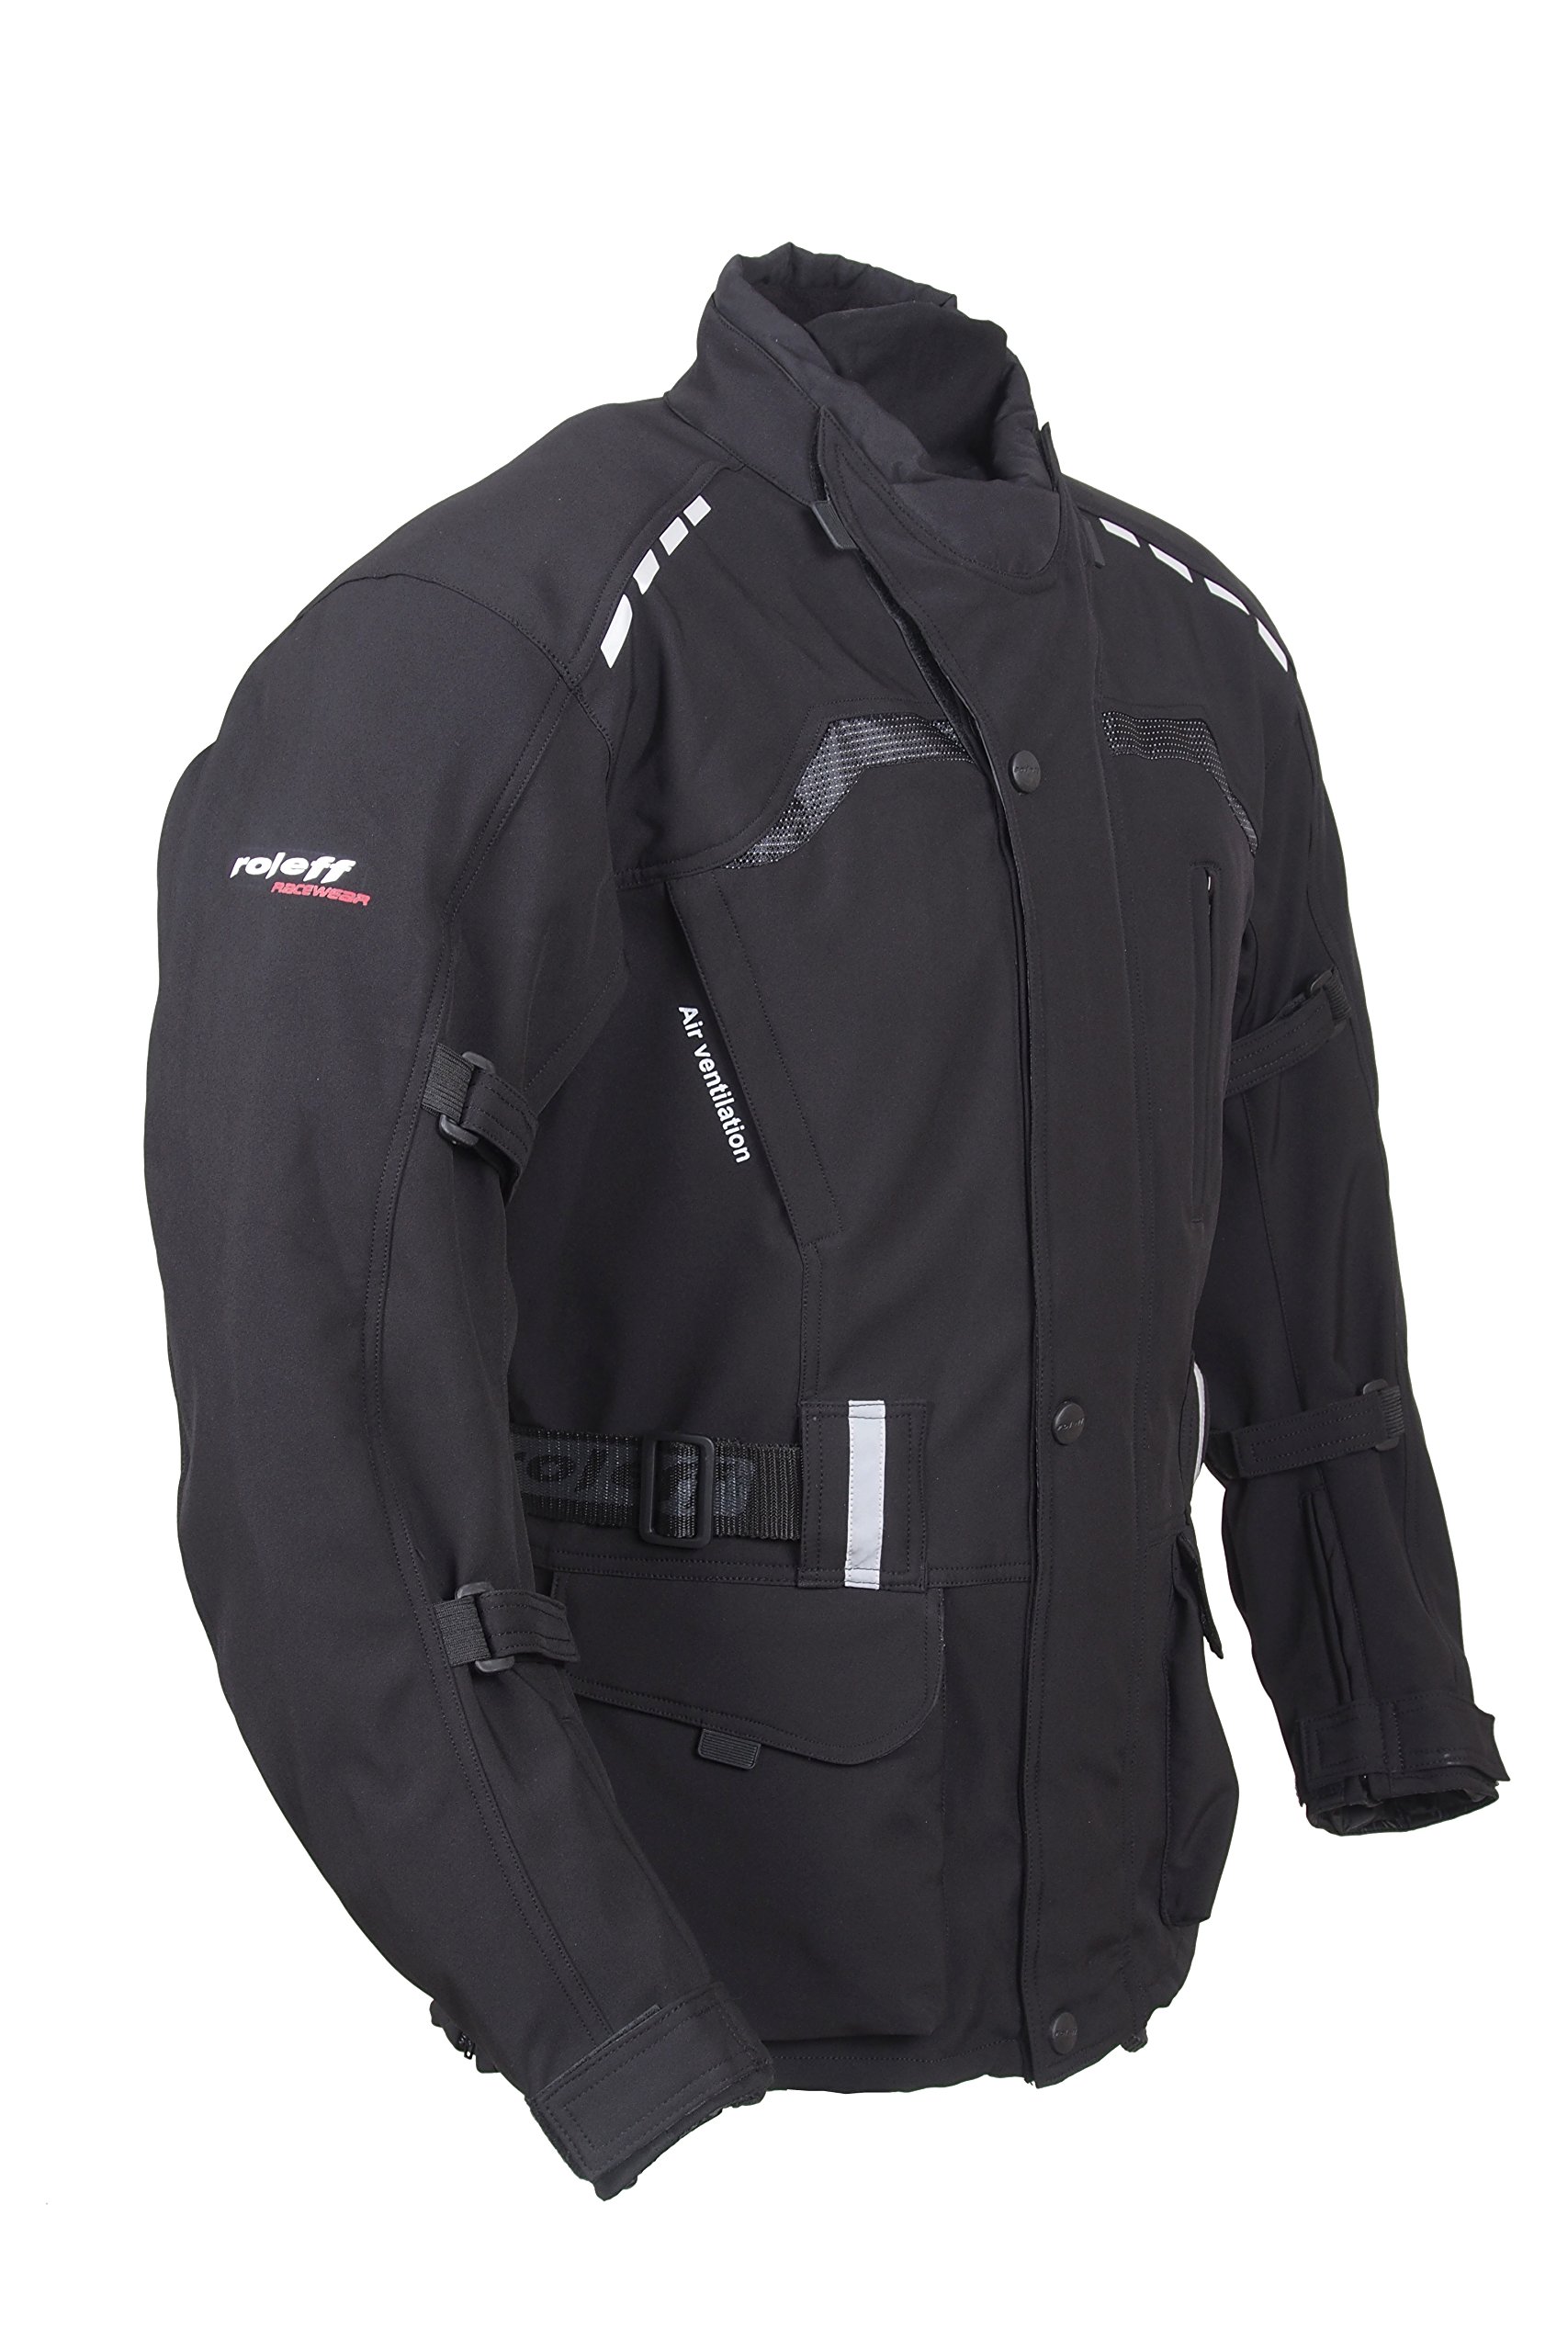 Roleff Racewear Unisex 15125 Lange Softshell Motorradjacke mit Protektoren und Klimamembrane, Schwarz, XL EU von Roleff Racewear